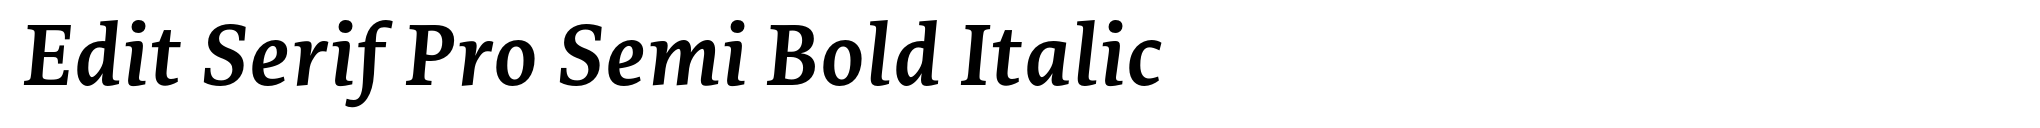 Bild bearbeiten Serif Pro Semi Bold Italic